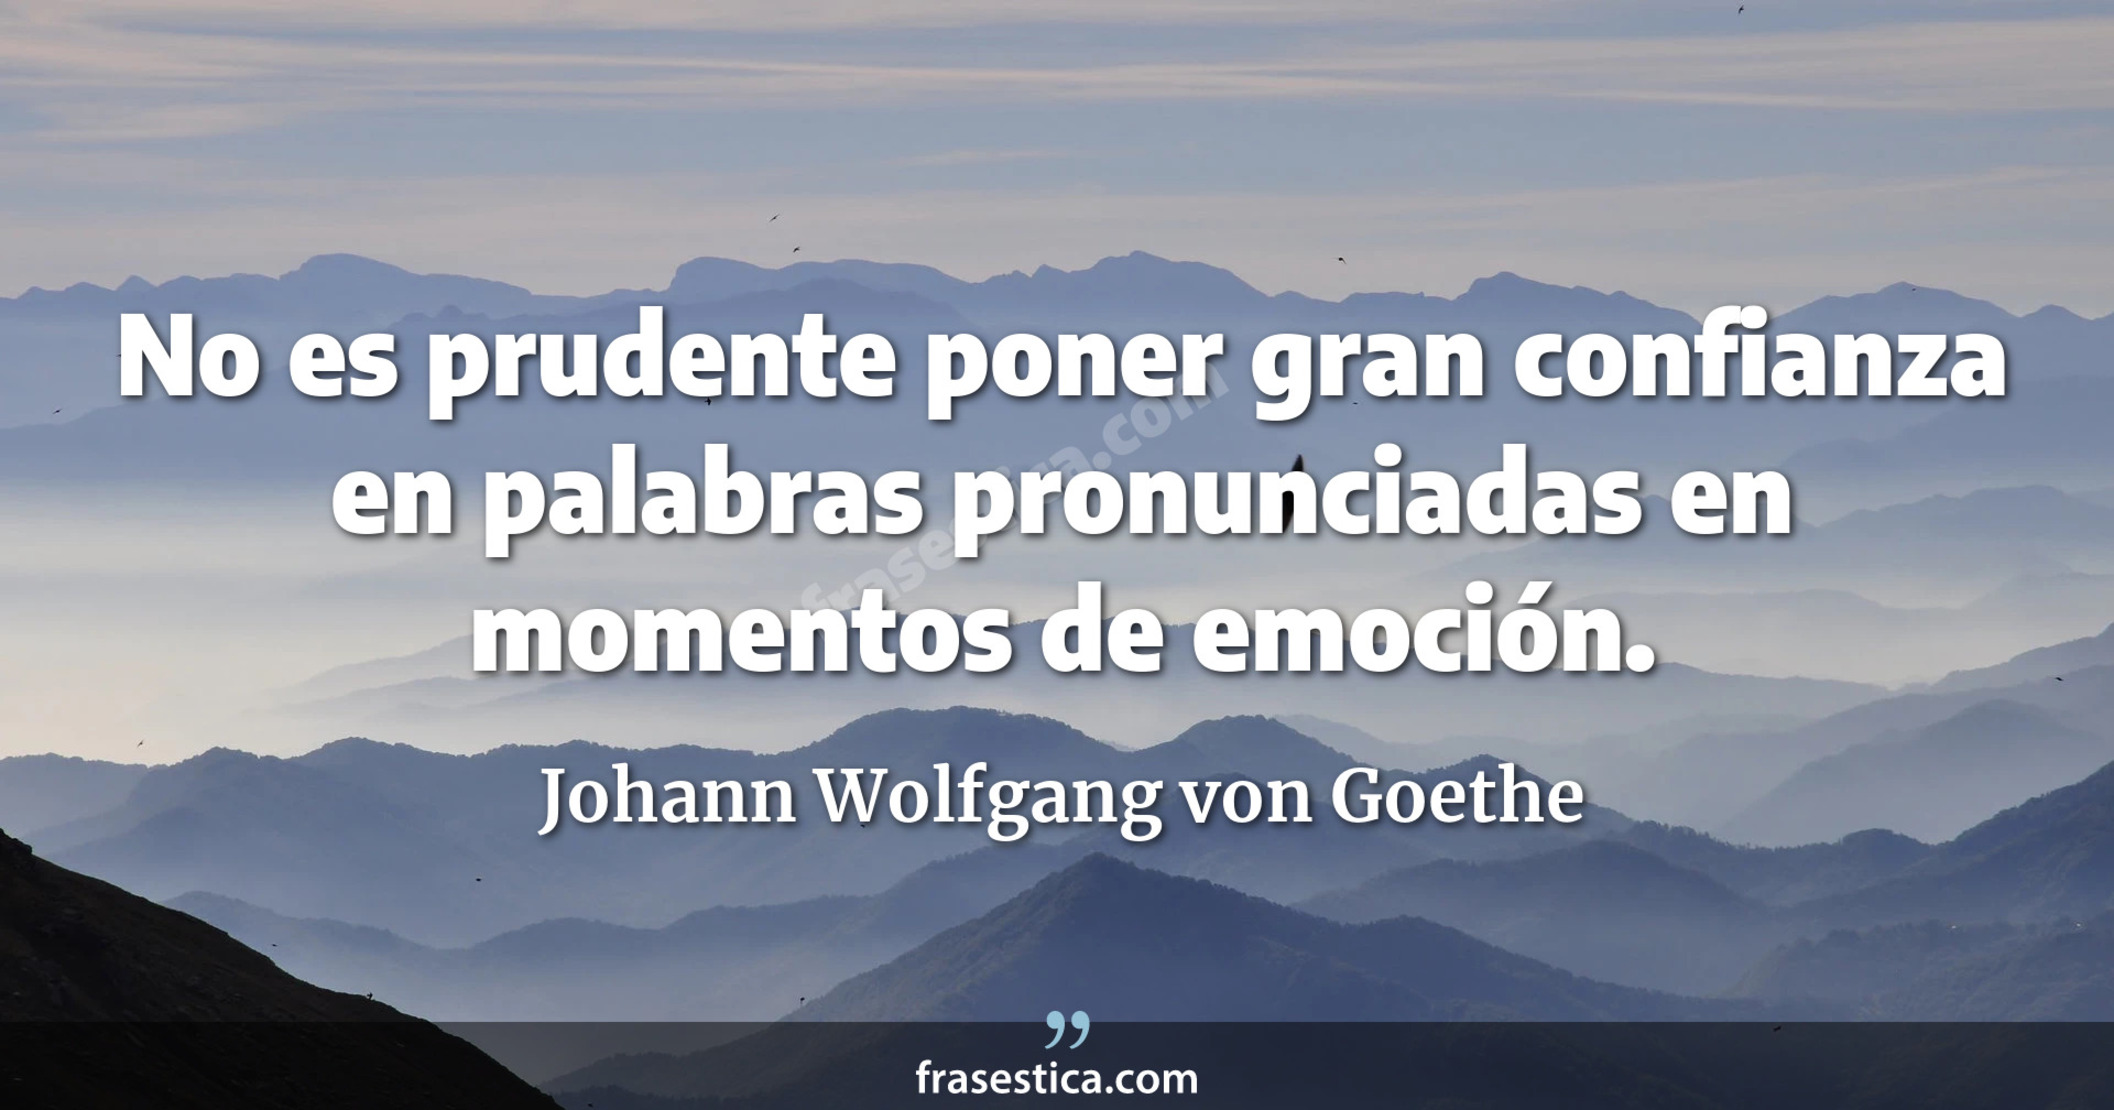 No es prudente poner gran confianza en palabras pronunciadas en momentos de emoción. - Johann Wolfgang von Goethe